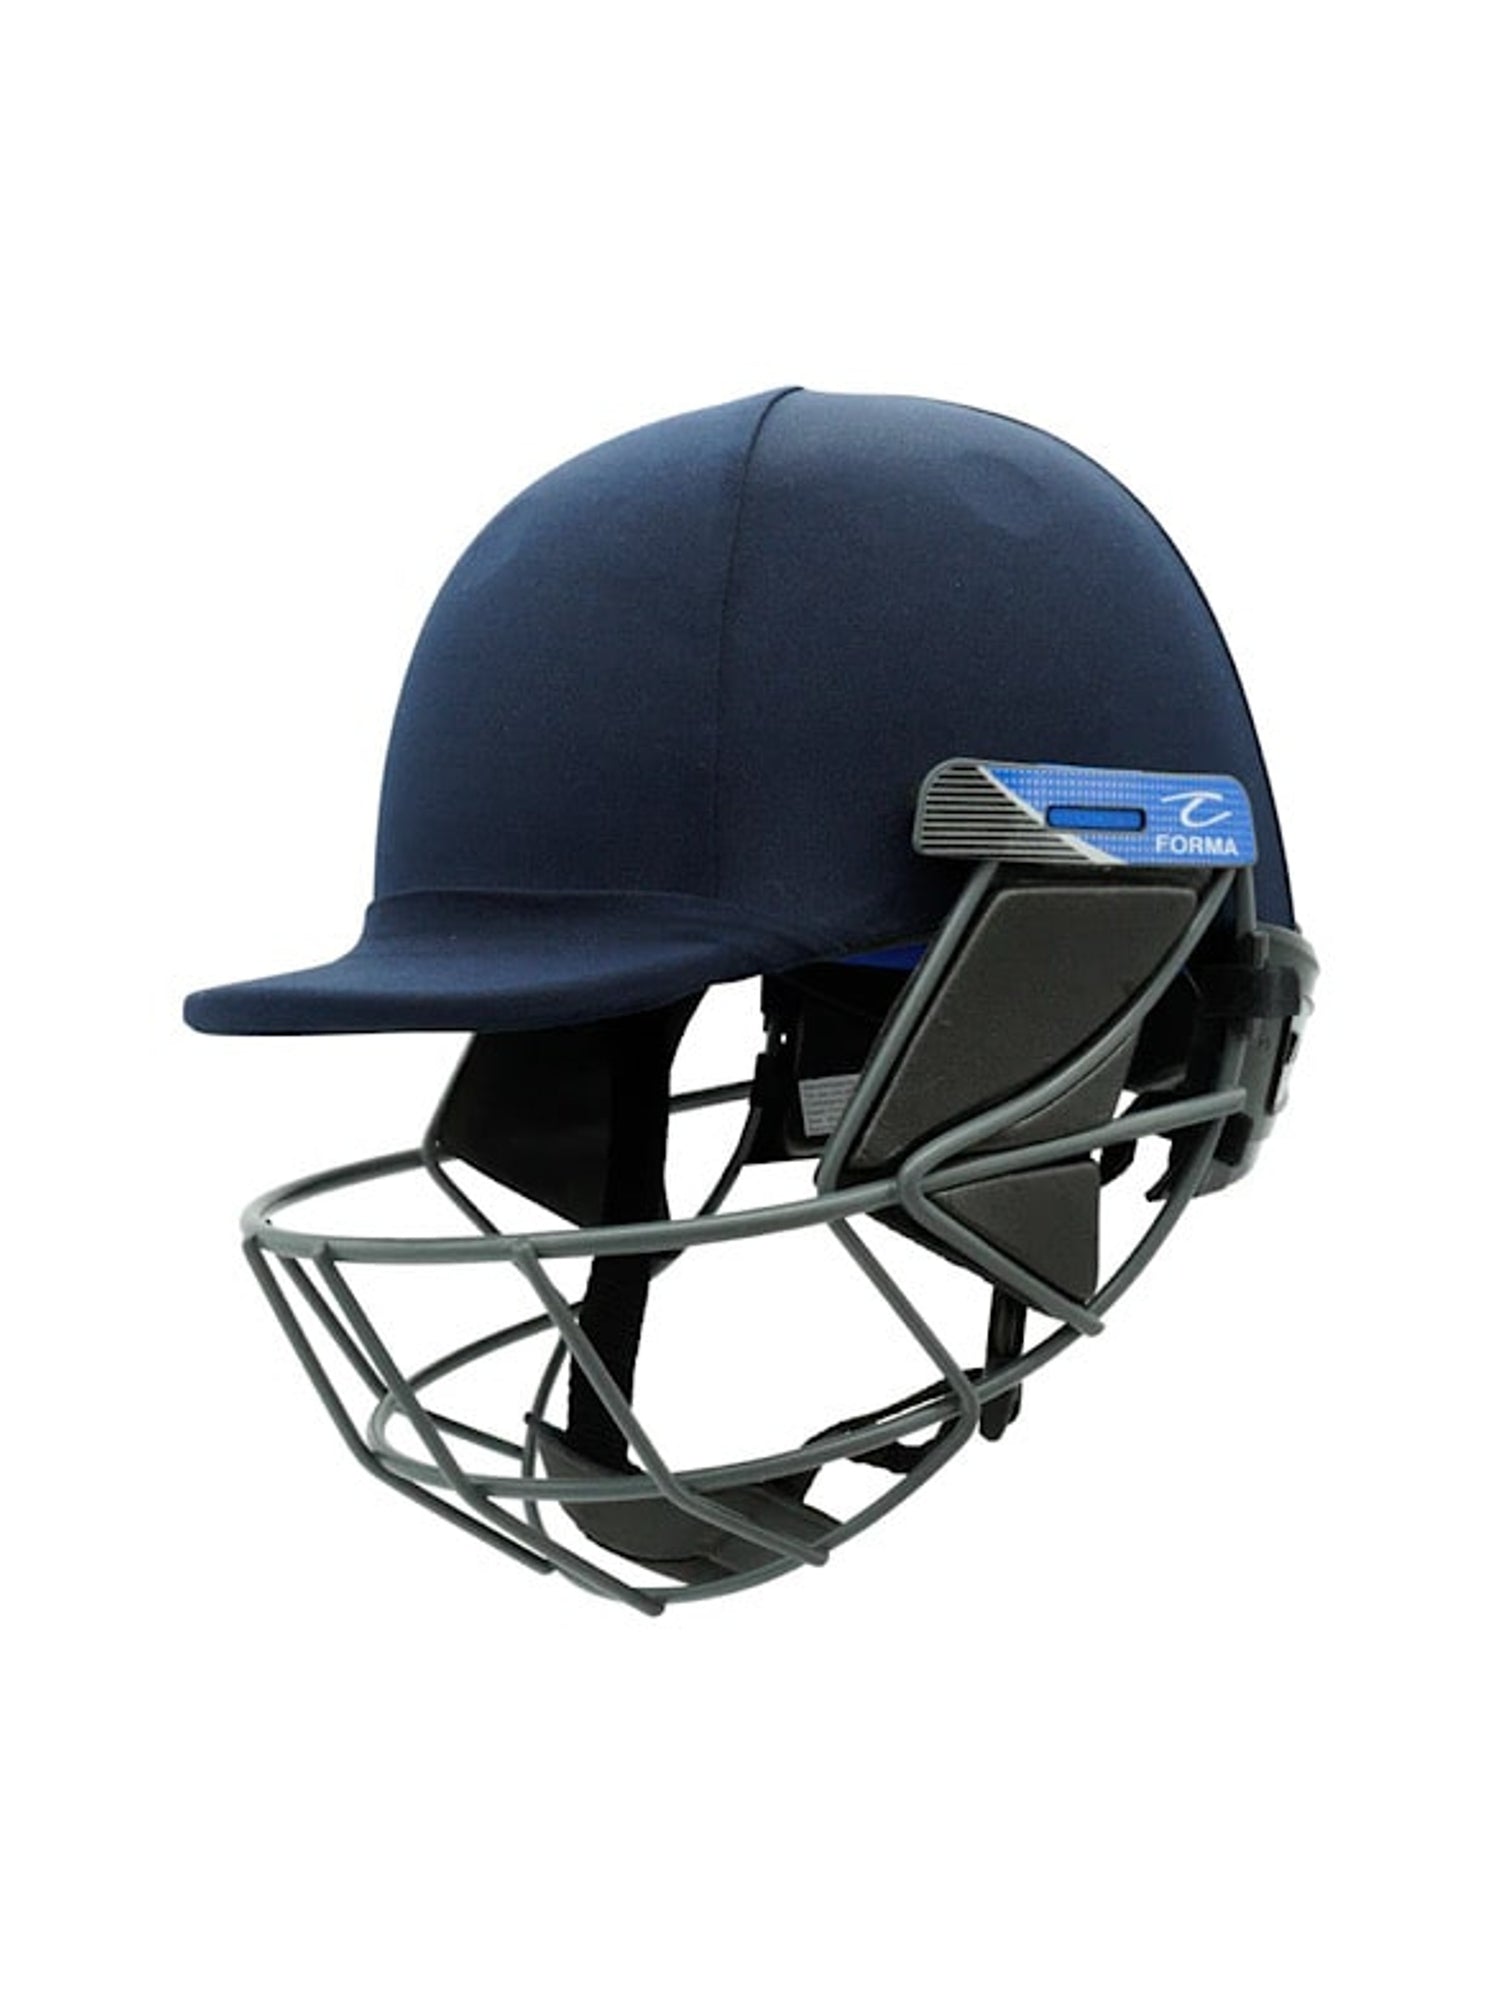 Cricket Batting Helmets